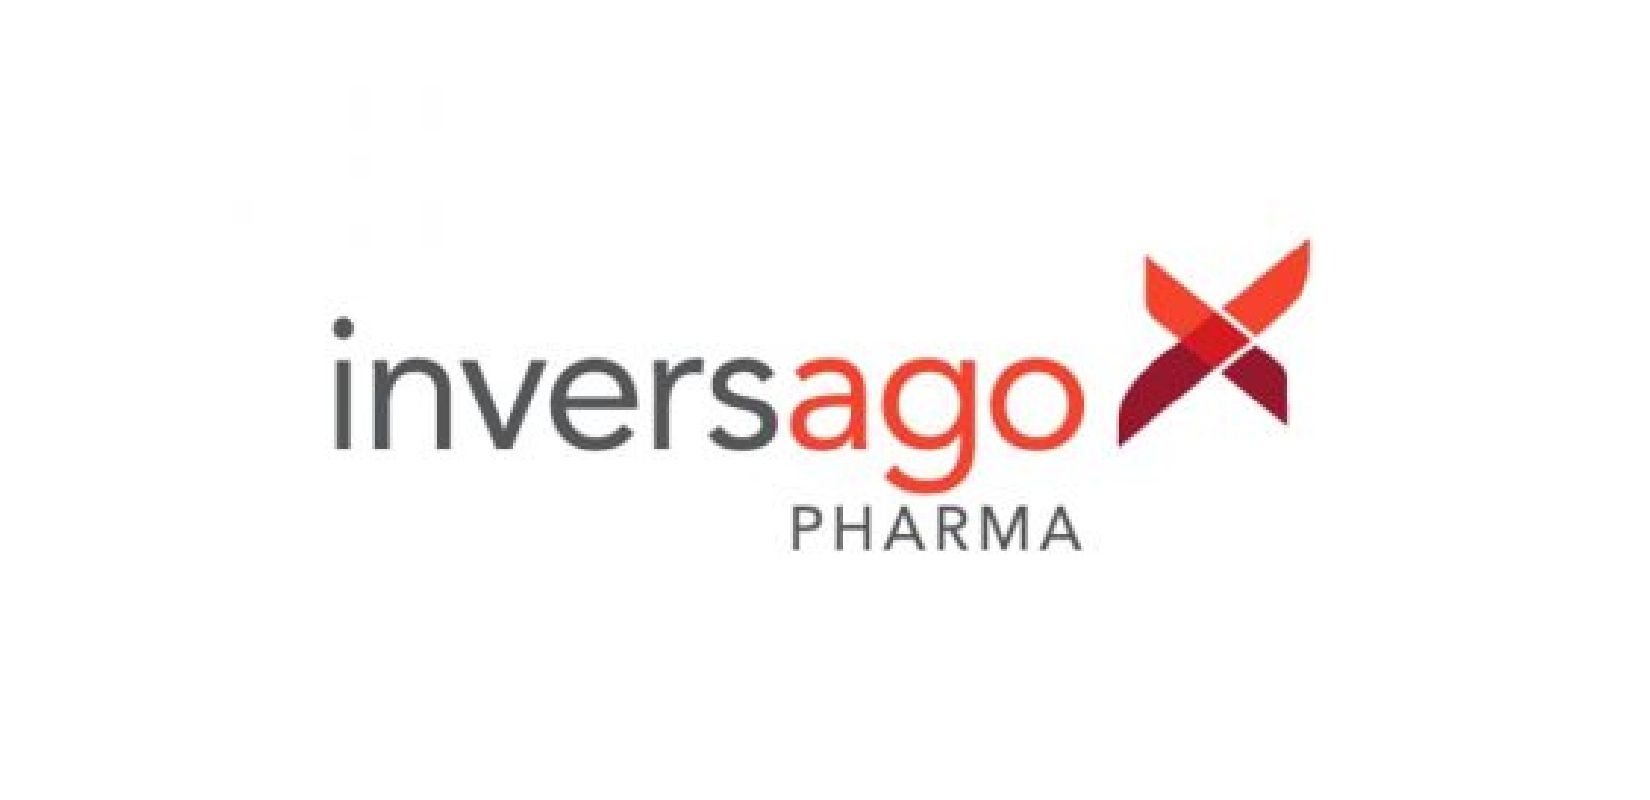 Entreprise de portefeuille d’adMare, Inversago Pharma débute une étude clinique de phase 1 avec le INV-202, un inhibiteur de CB1 actif à la périphérie de nouvelle génération